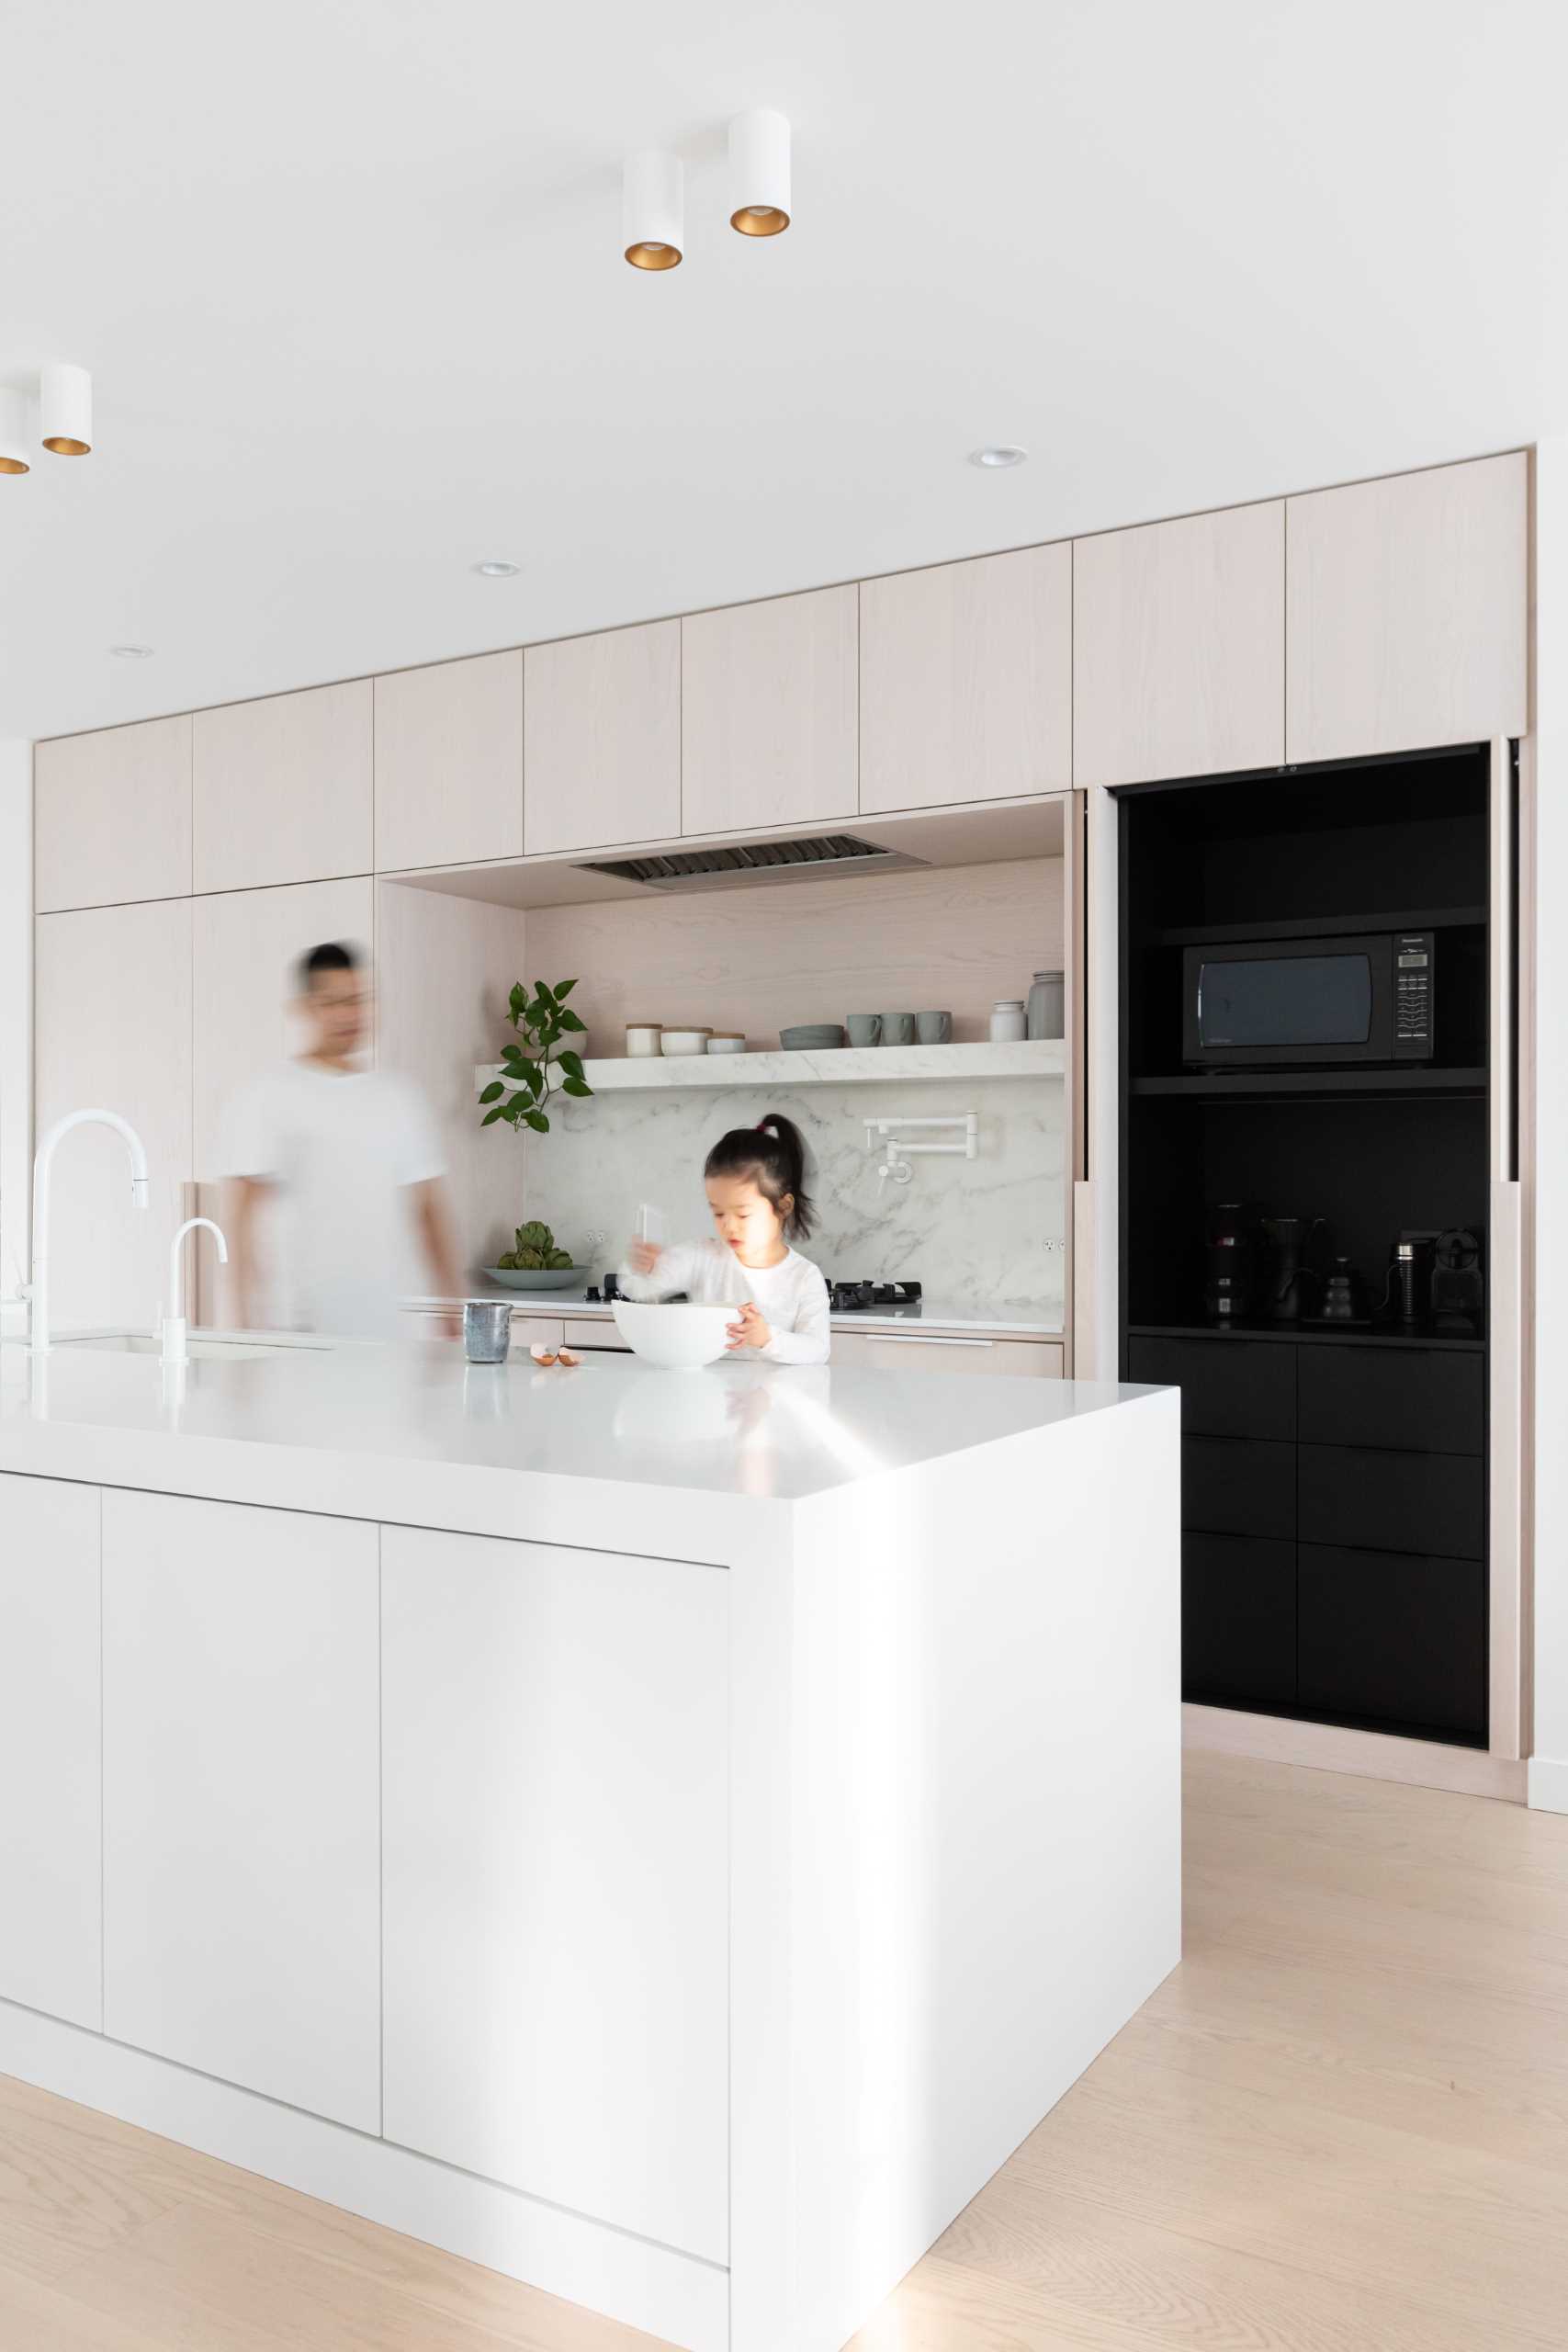 در این آشپزخانه مدرن، بلوط رنگ‌آمیزی سفید، مرمر سفید سرد و لهجه‌های سیاه وجود دارد.